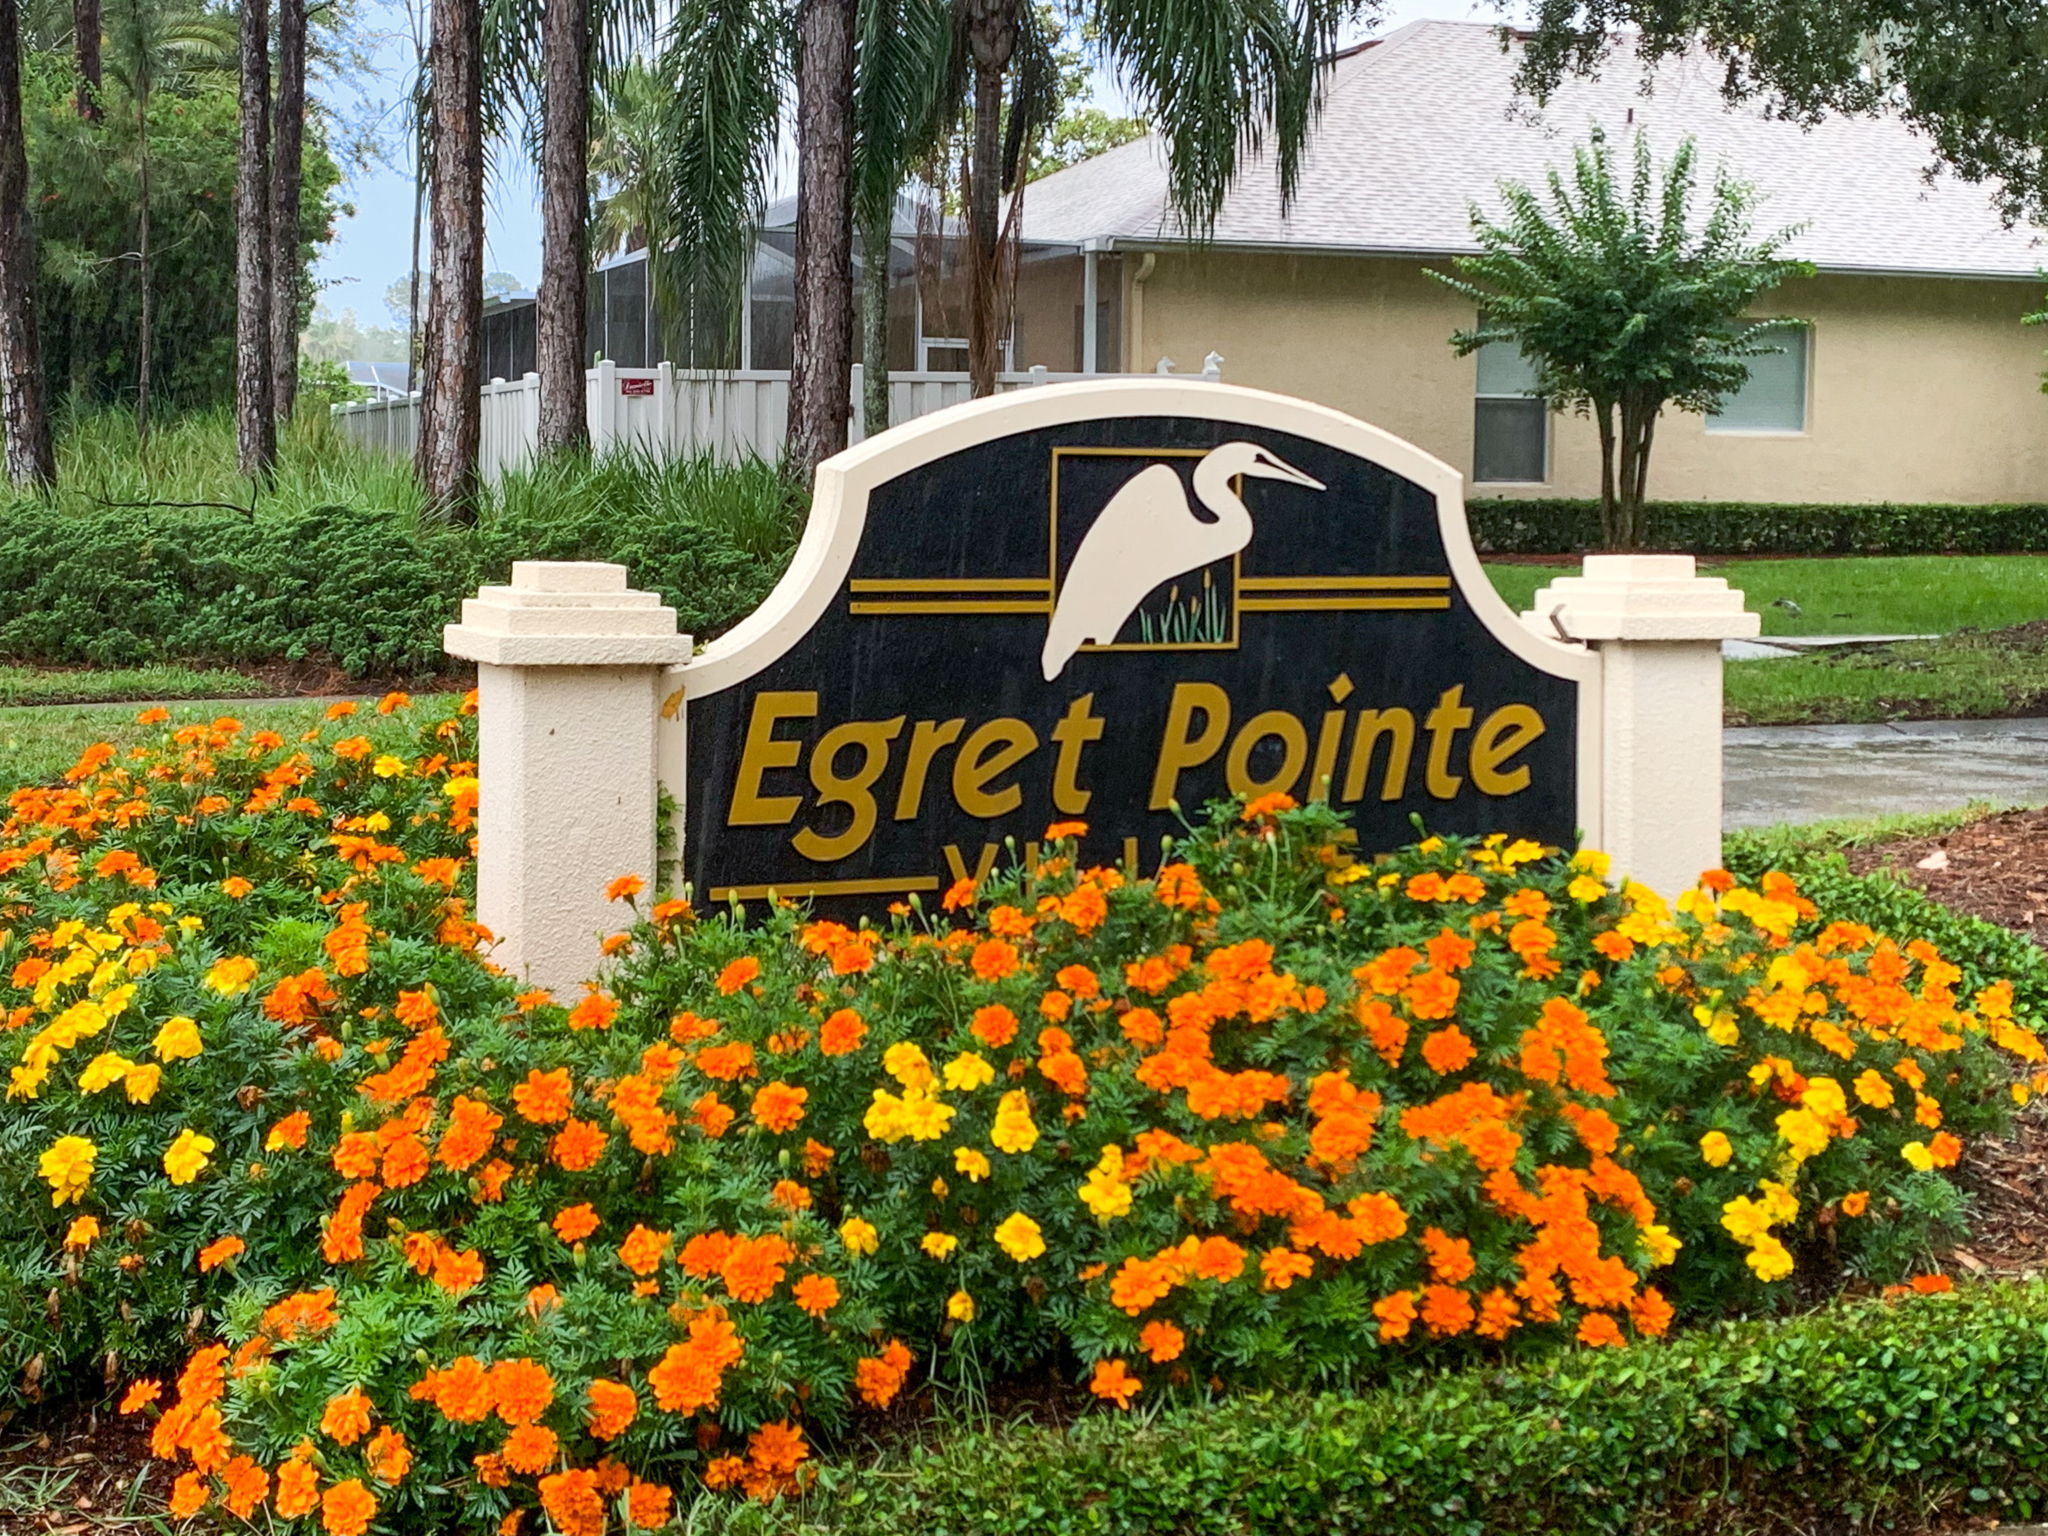 Egret Pointe